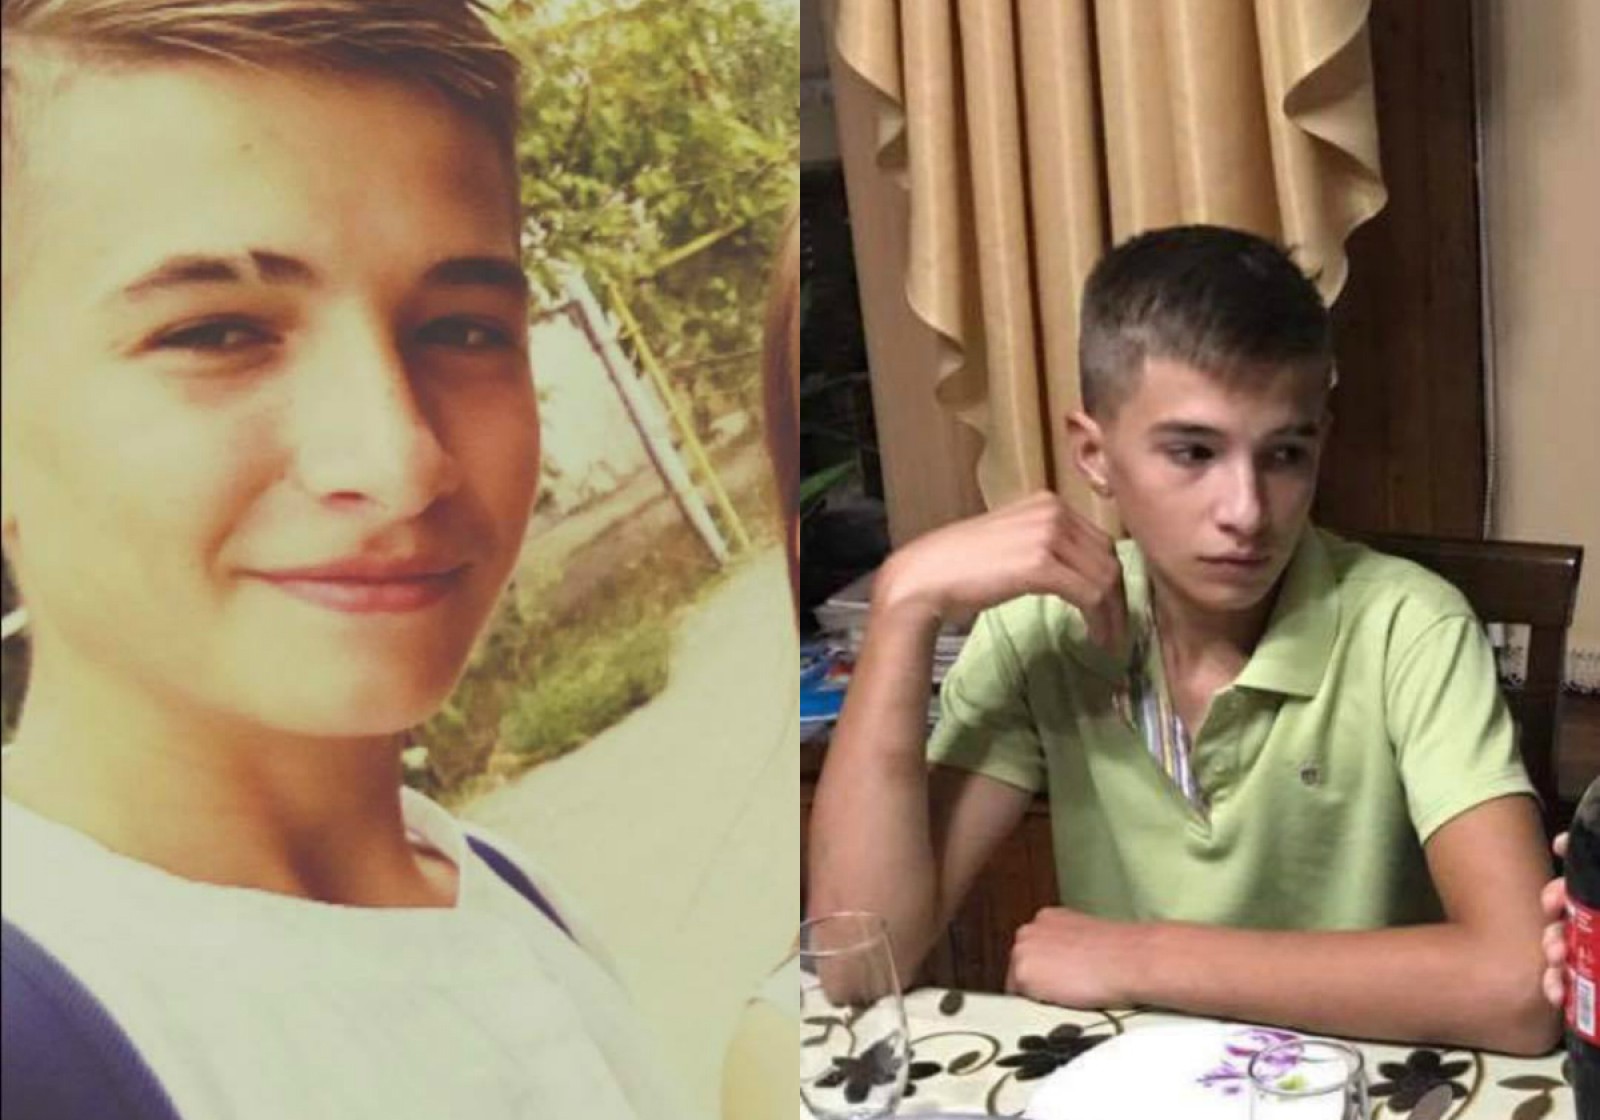 Poliția a descoperit motivul dispariției tânărului de 14 ani din Sângera